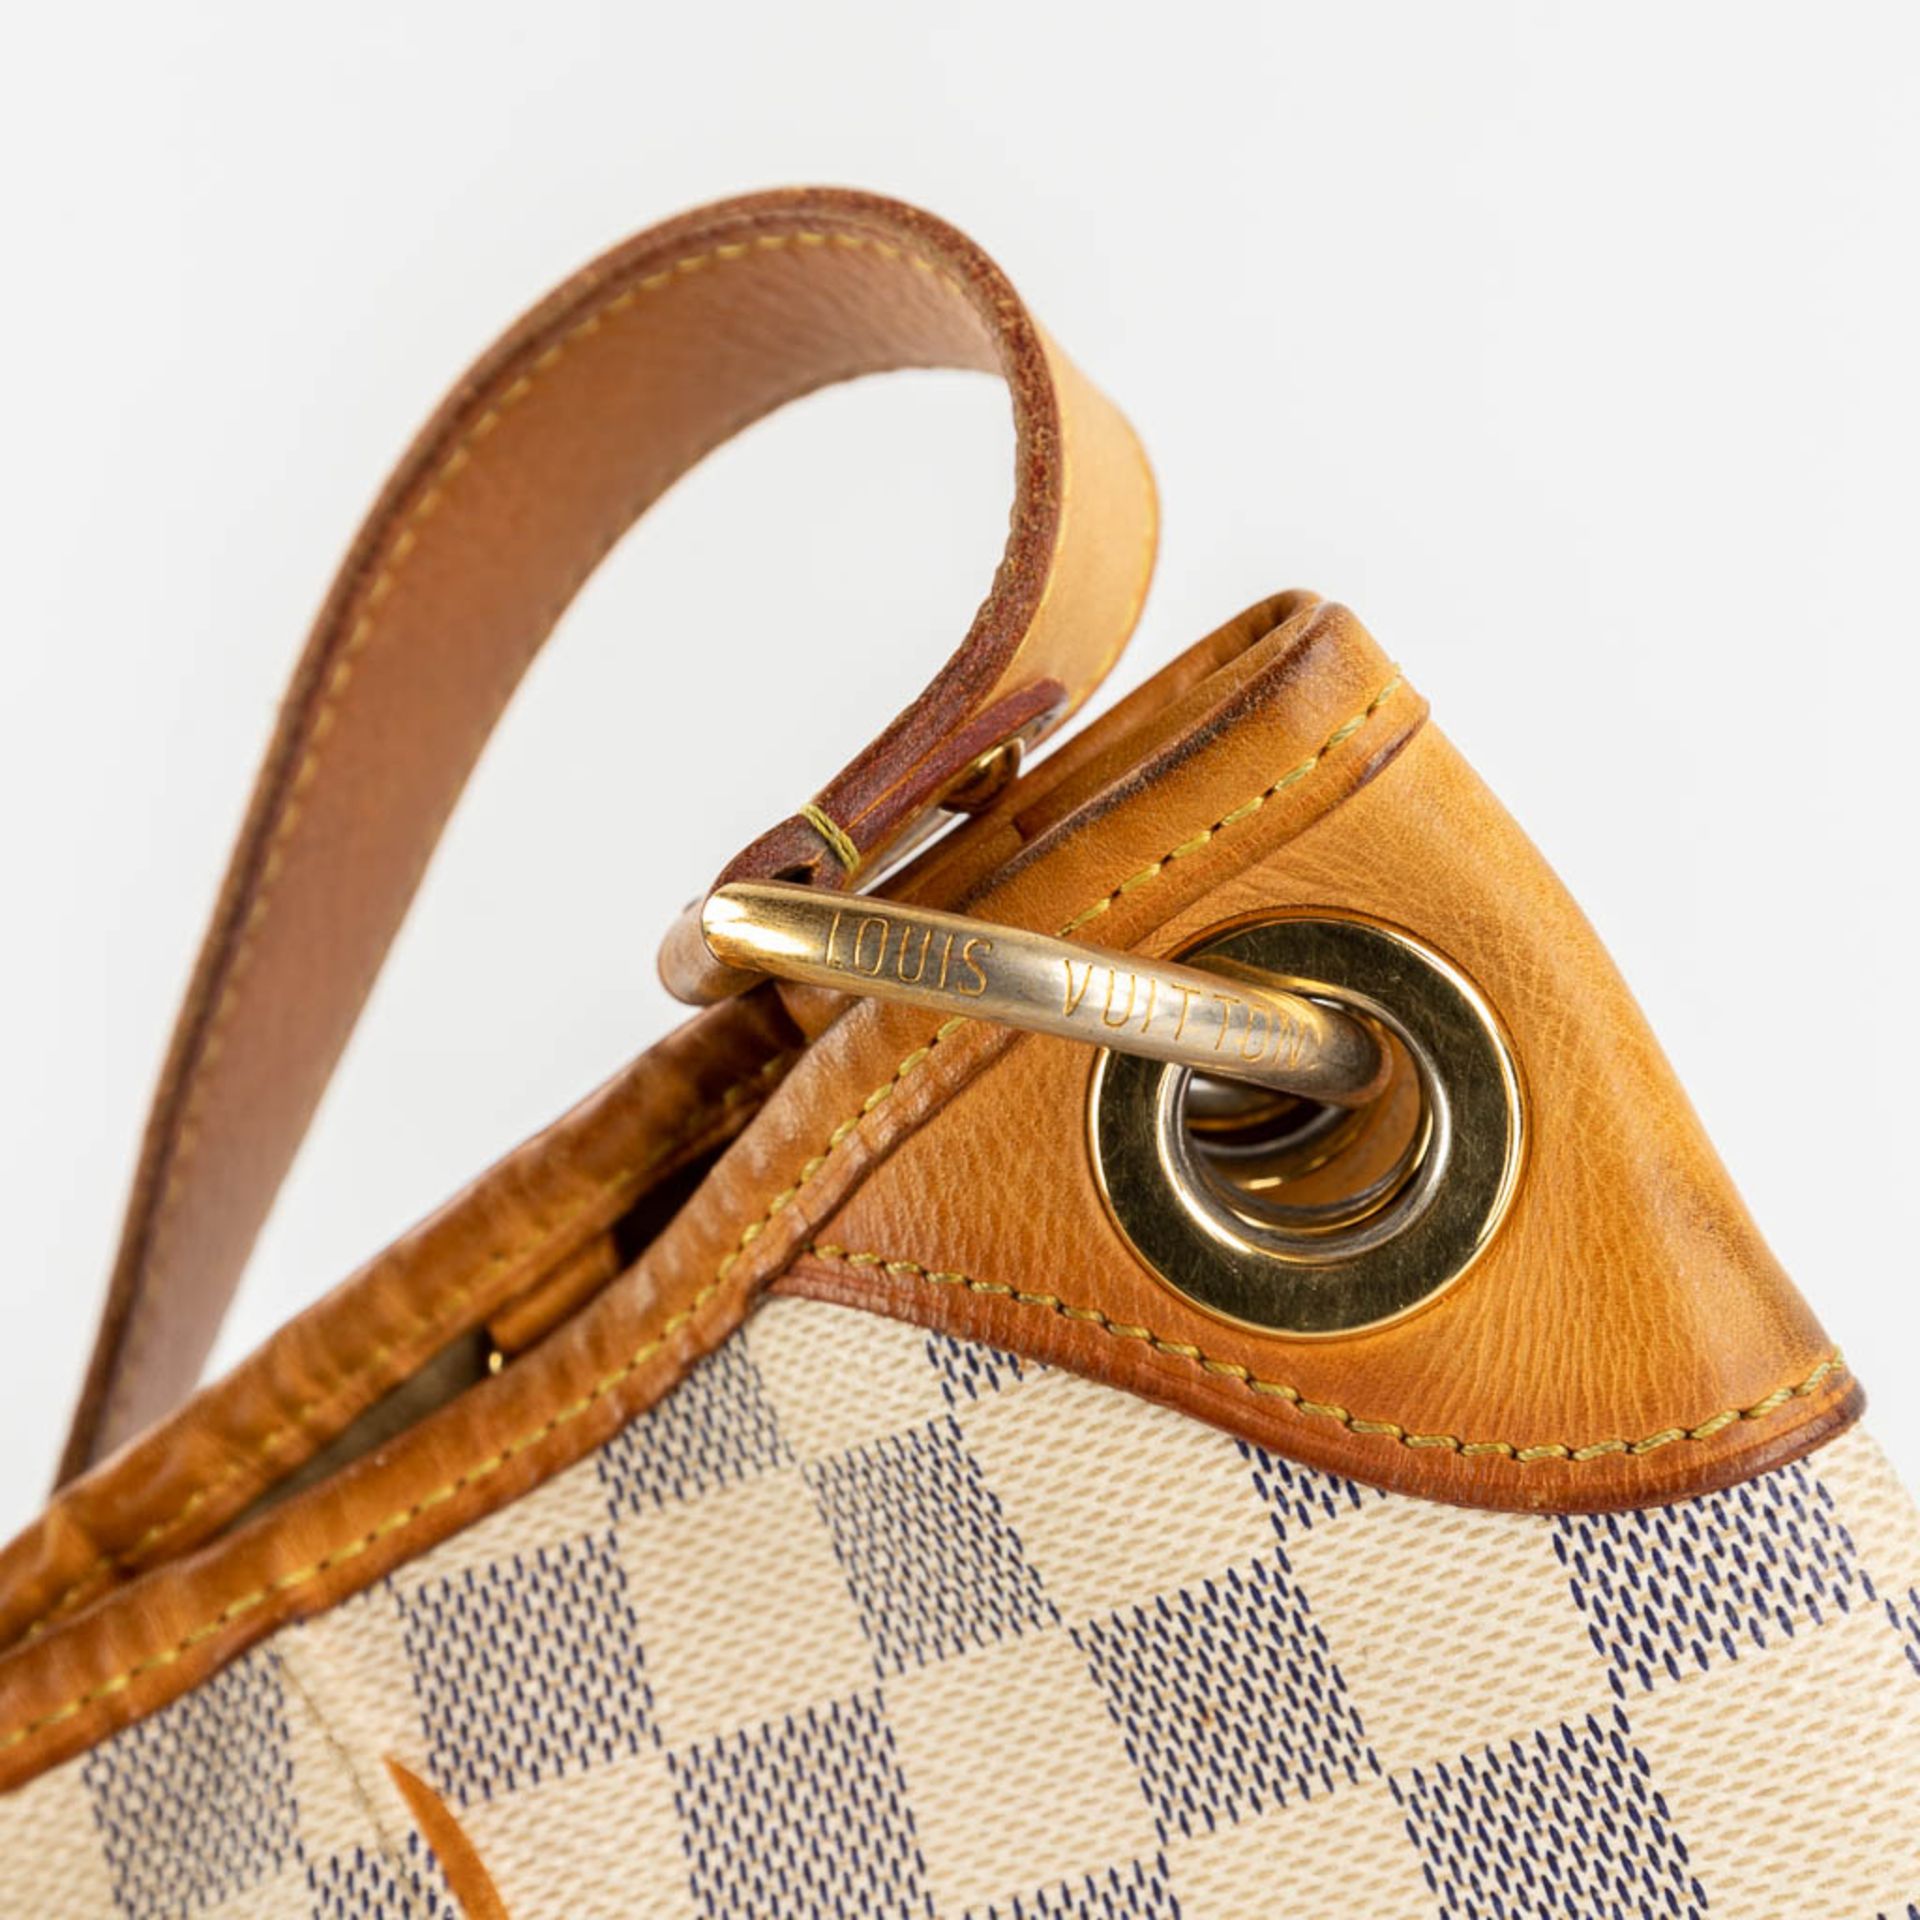 Louis Vuitton, Galleria, a handbag made of Damier Azur. (W:39 x H:30 cm) - Image 11 of 18